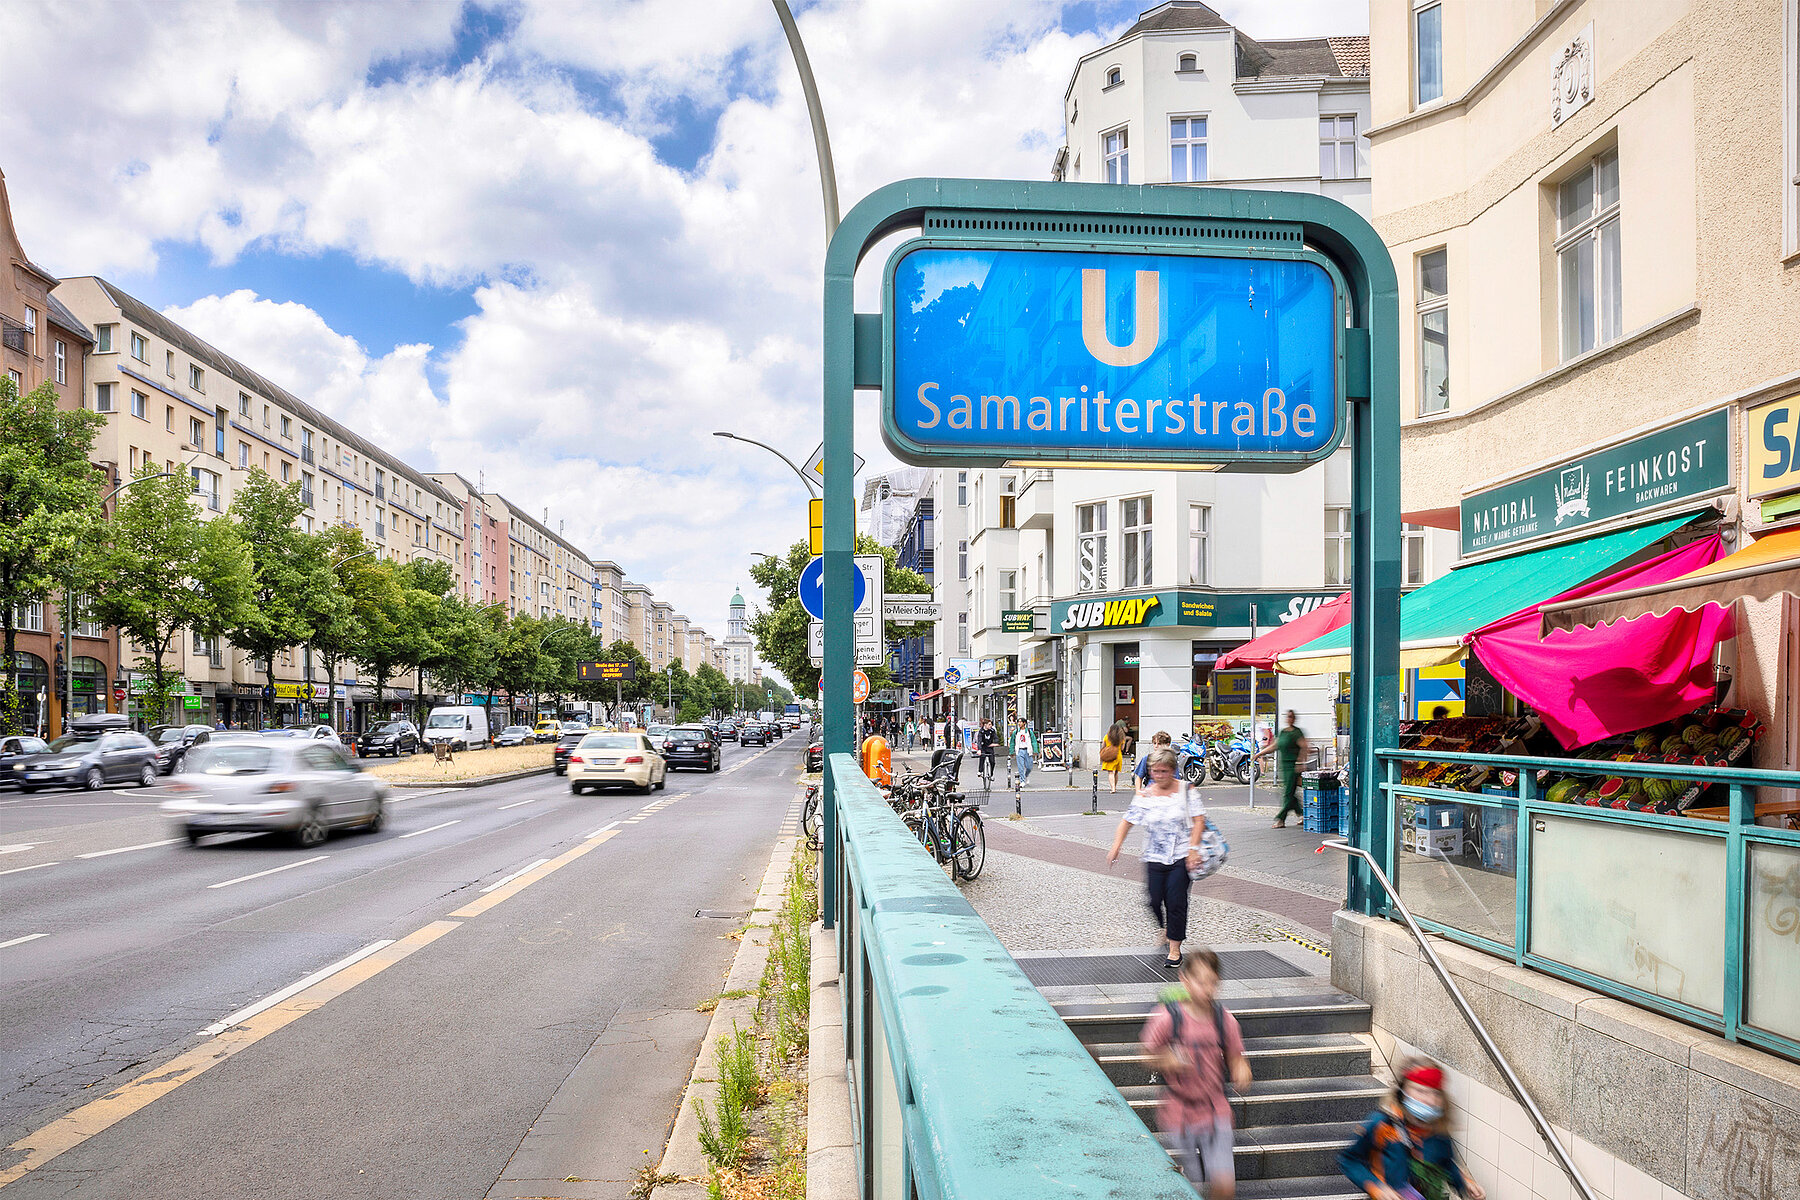 Rechts überspannt ein blaues Schild mit der Aufschrift U Samariterstraße eine Treppe, die in die Haltestelle hinab führt, links davon eine Straße. 